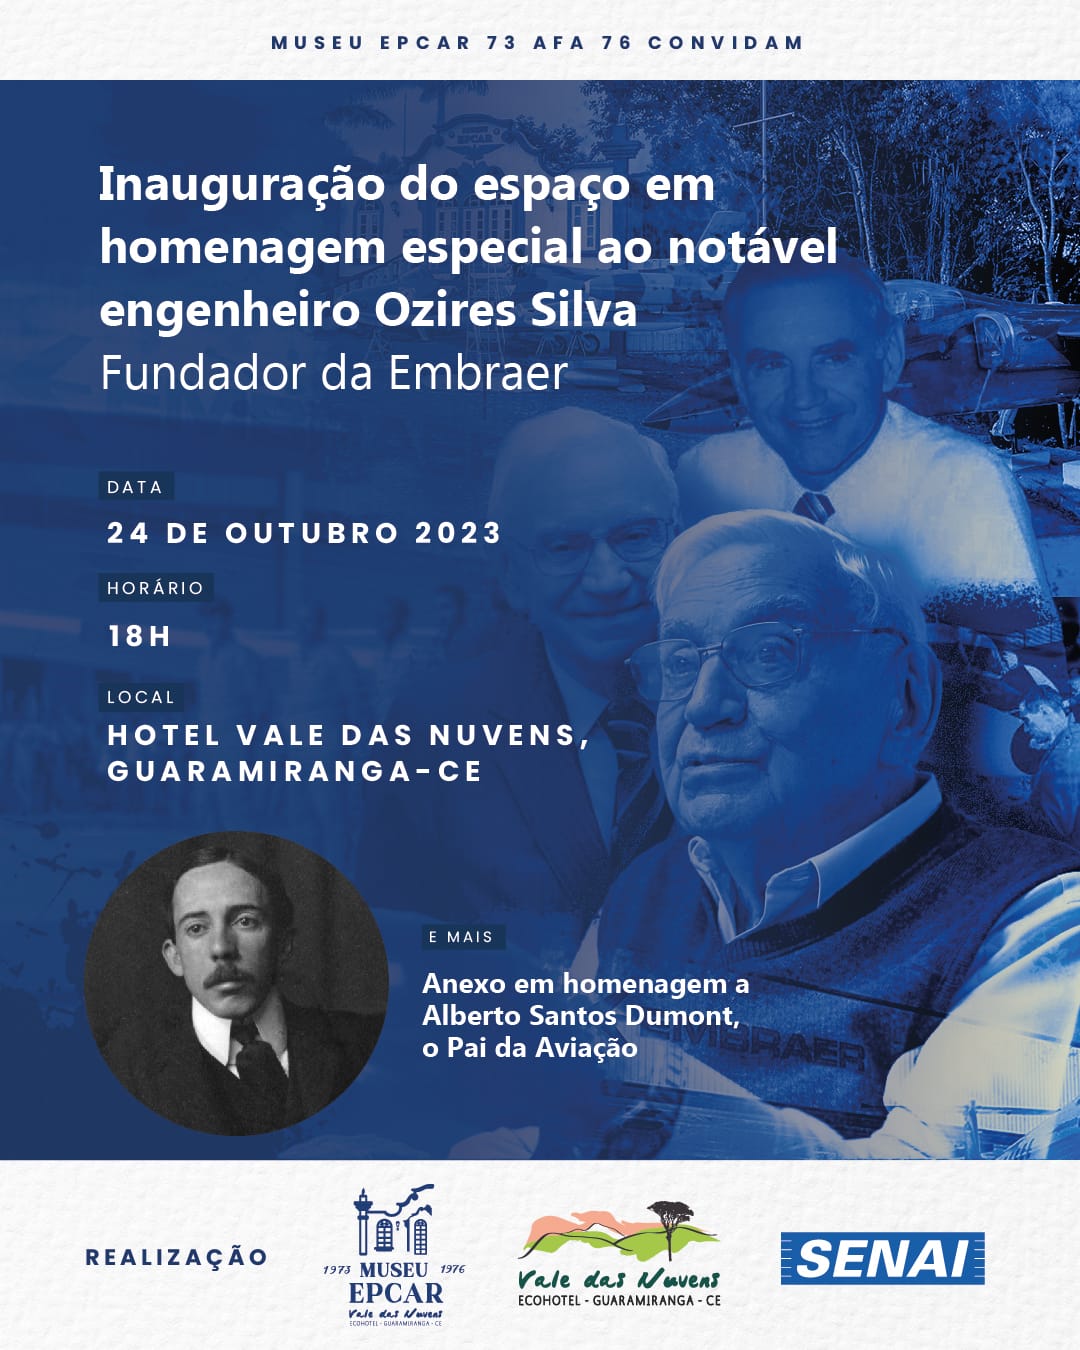 Ozires Silva